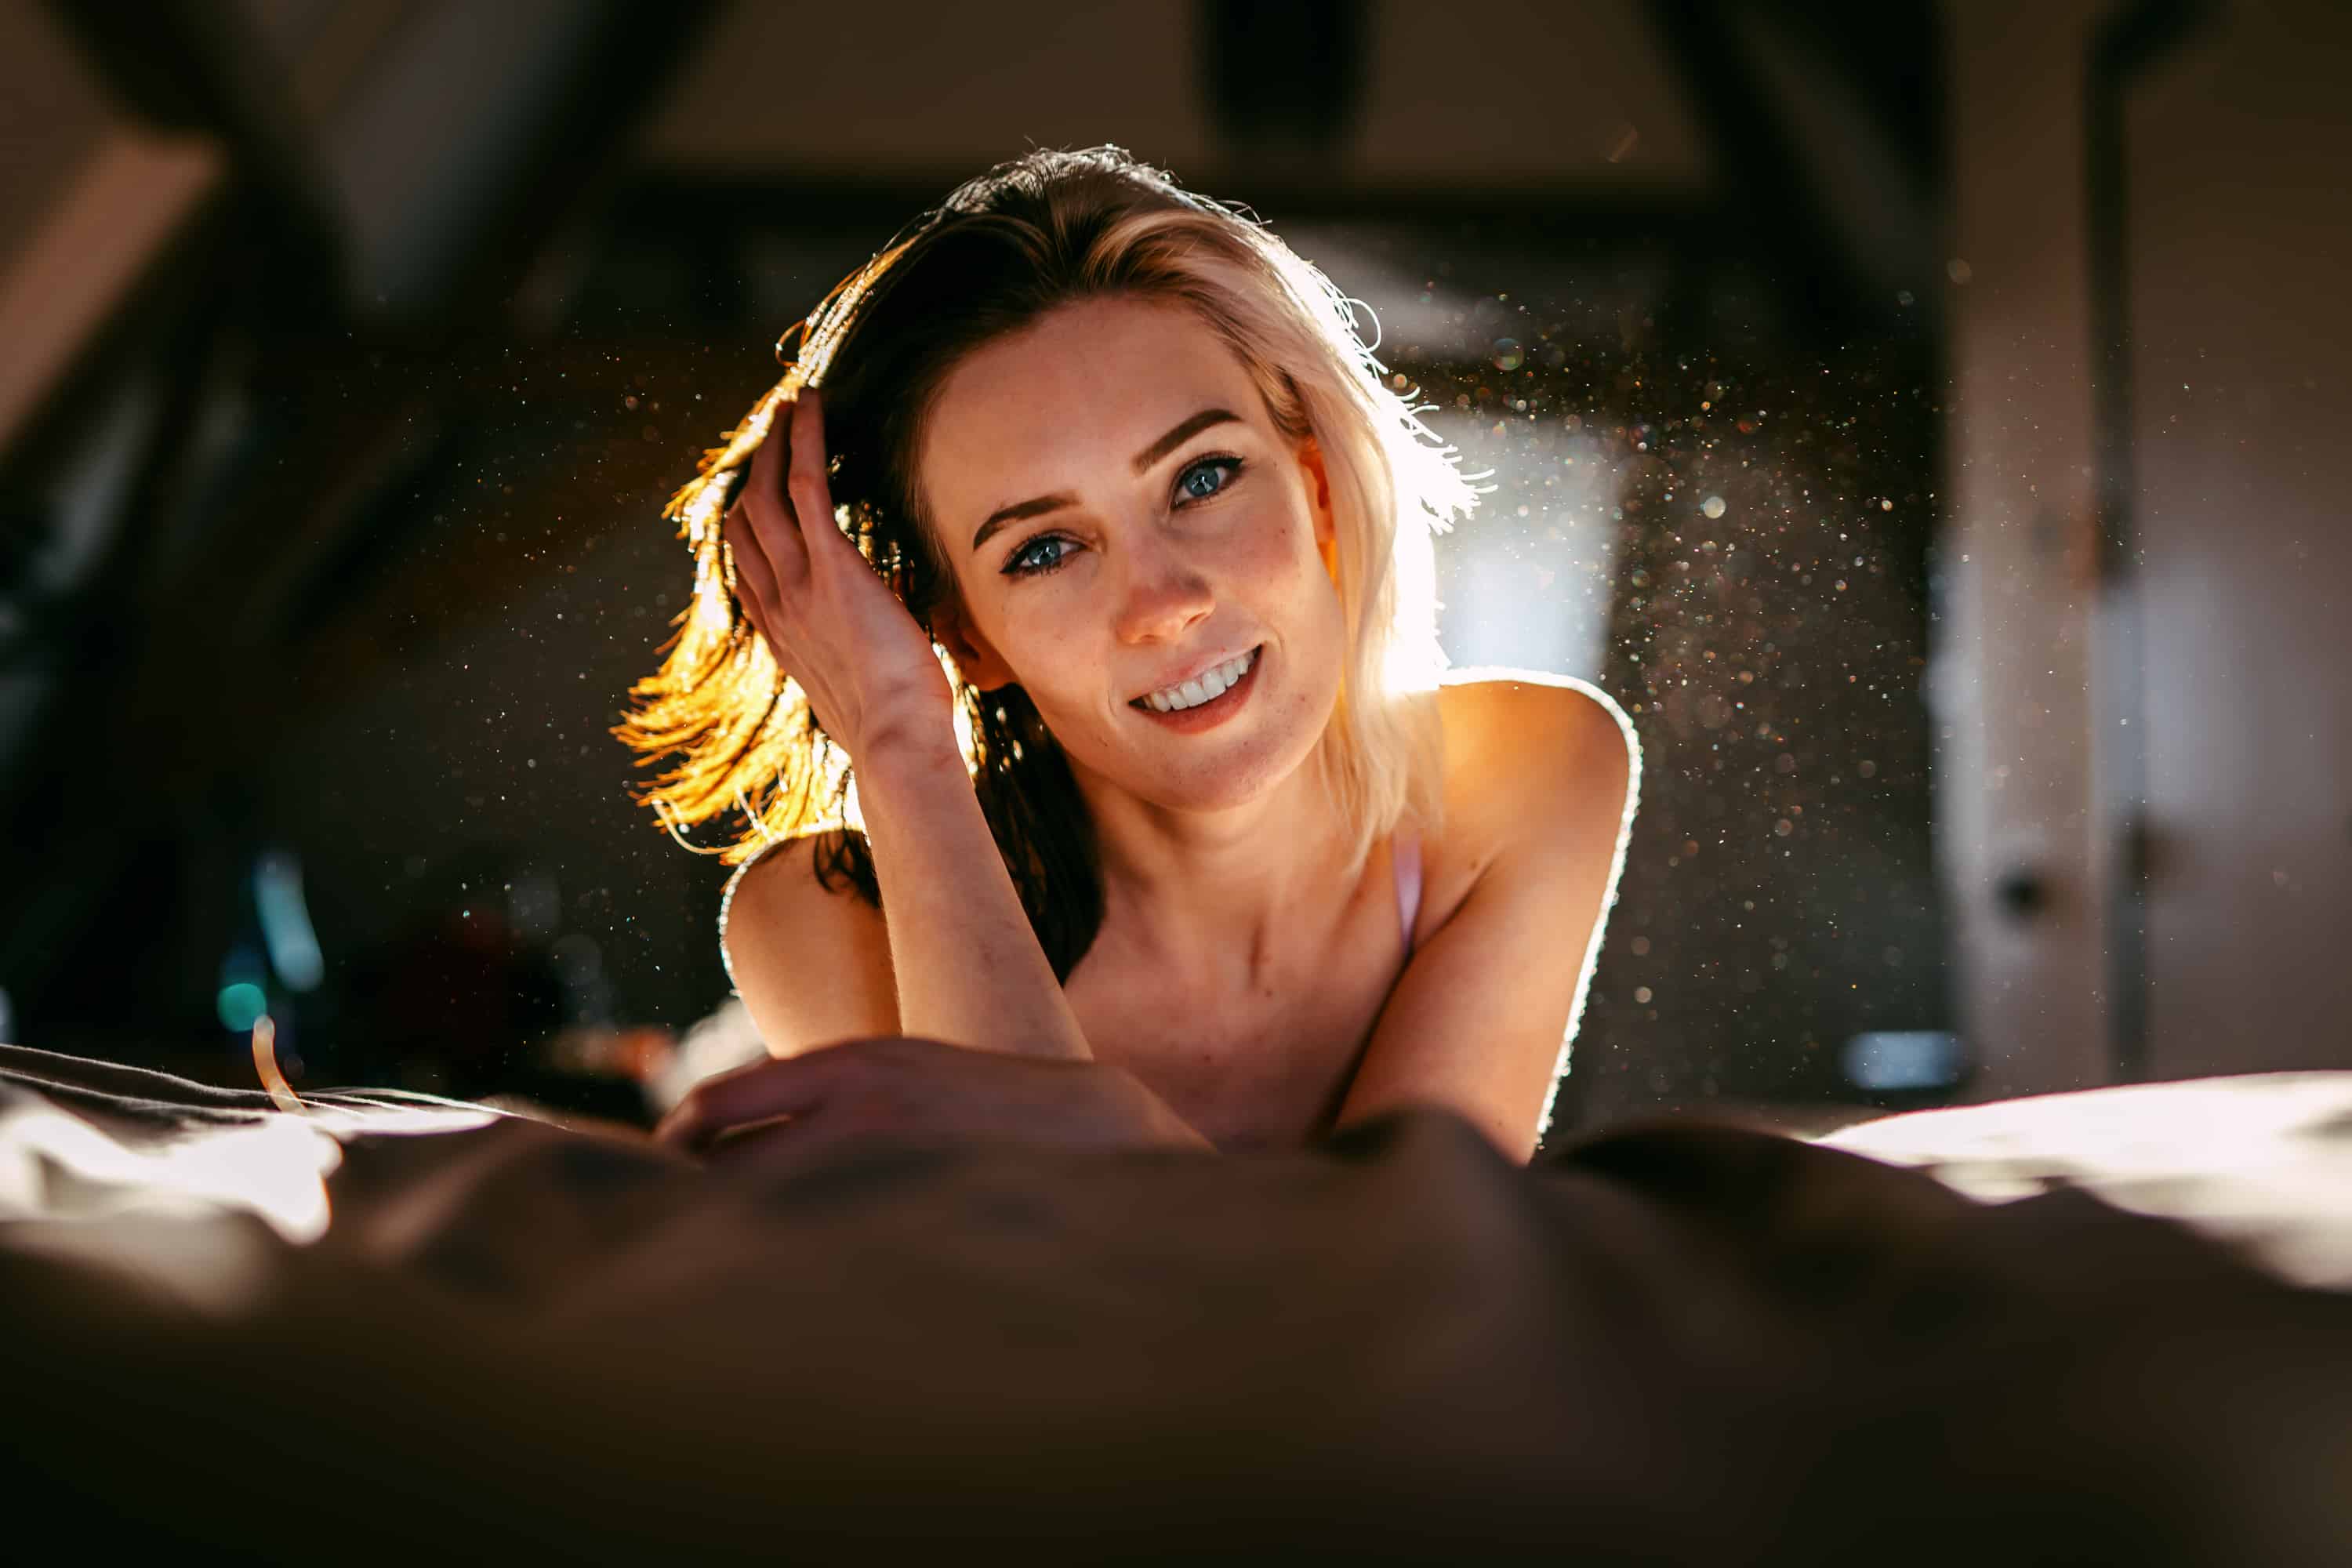 Een jonge vrouw poseert verleidelijk op een bed tijdens een boudoirshoot in een donkere kamer.